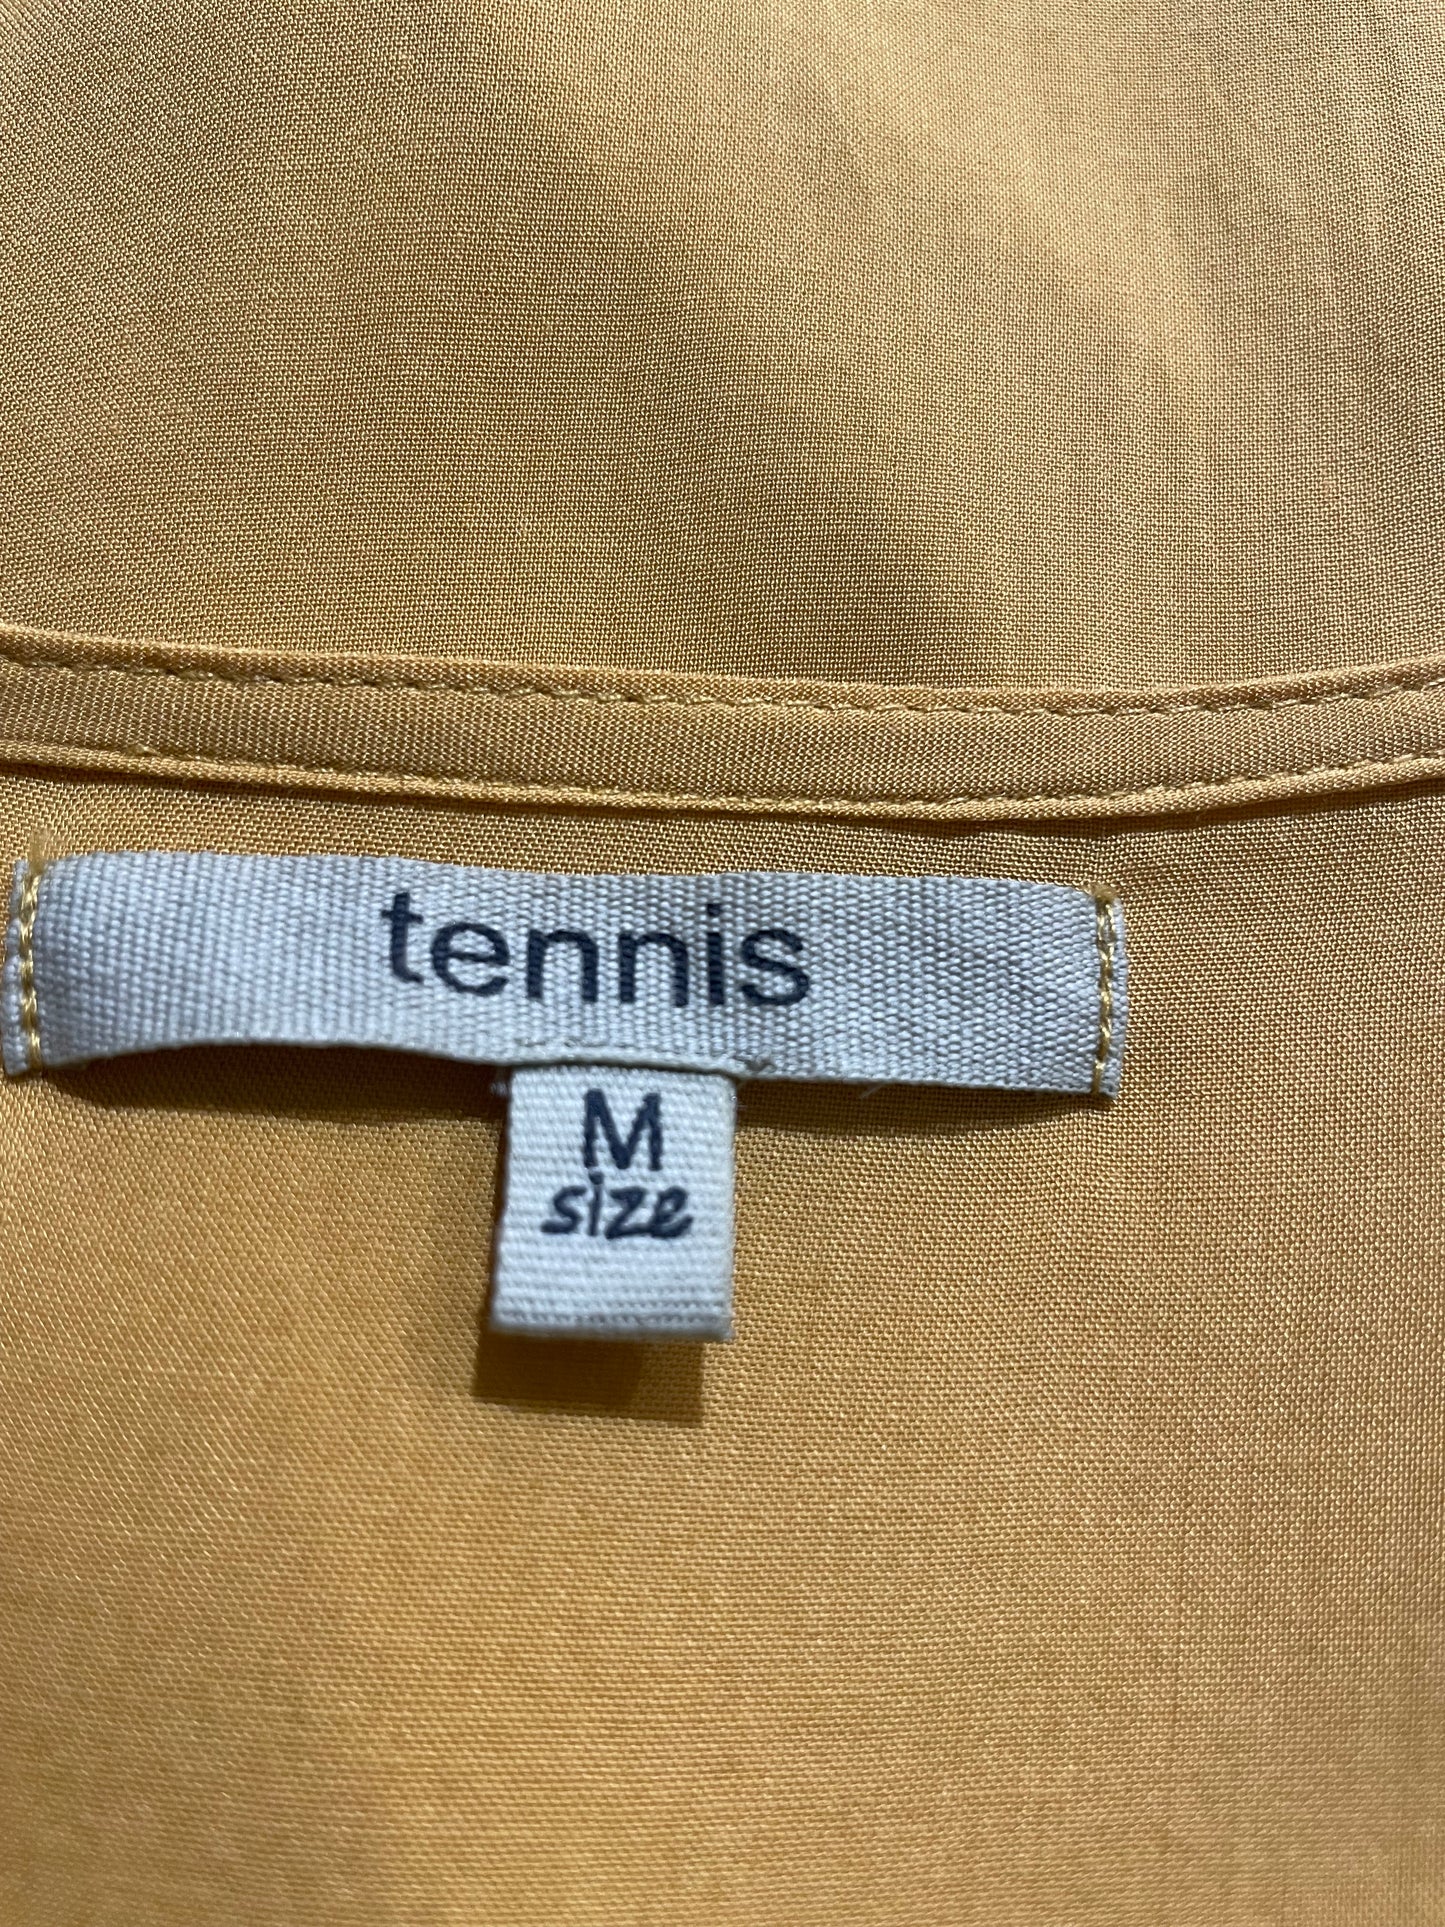 Blusa Tennis Cruzada Amarillo Ocre - Talla M